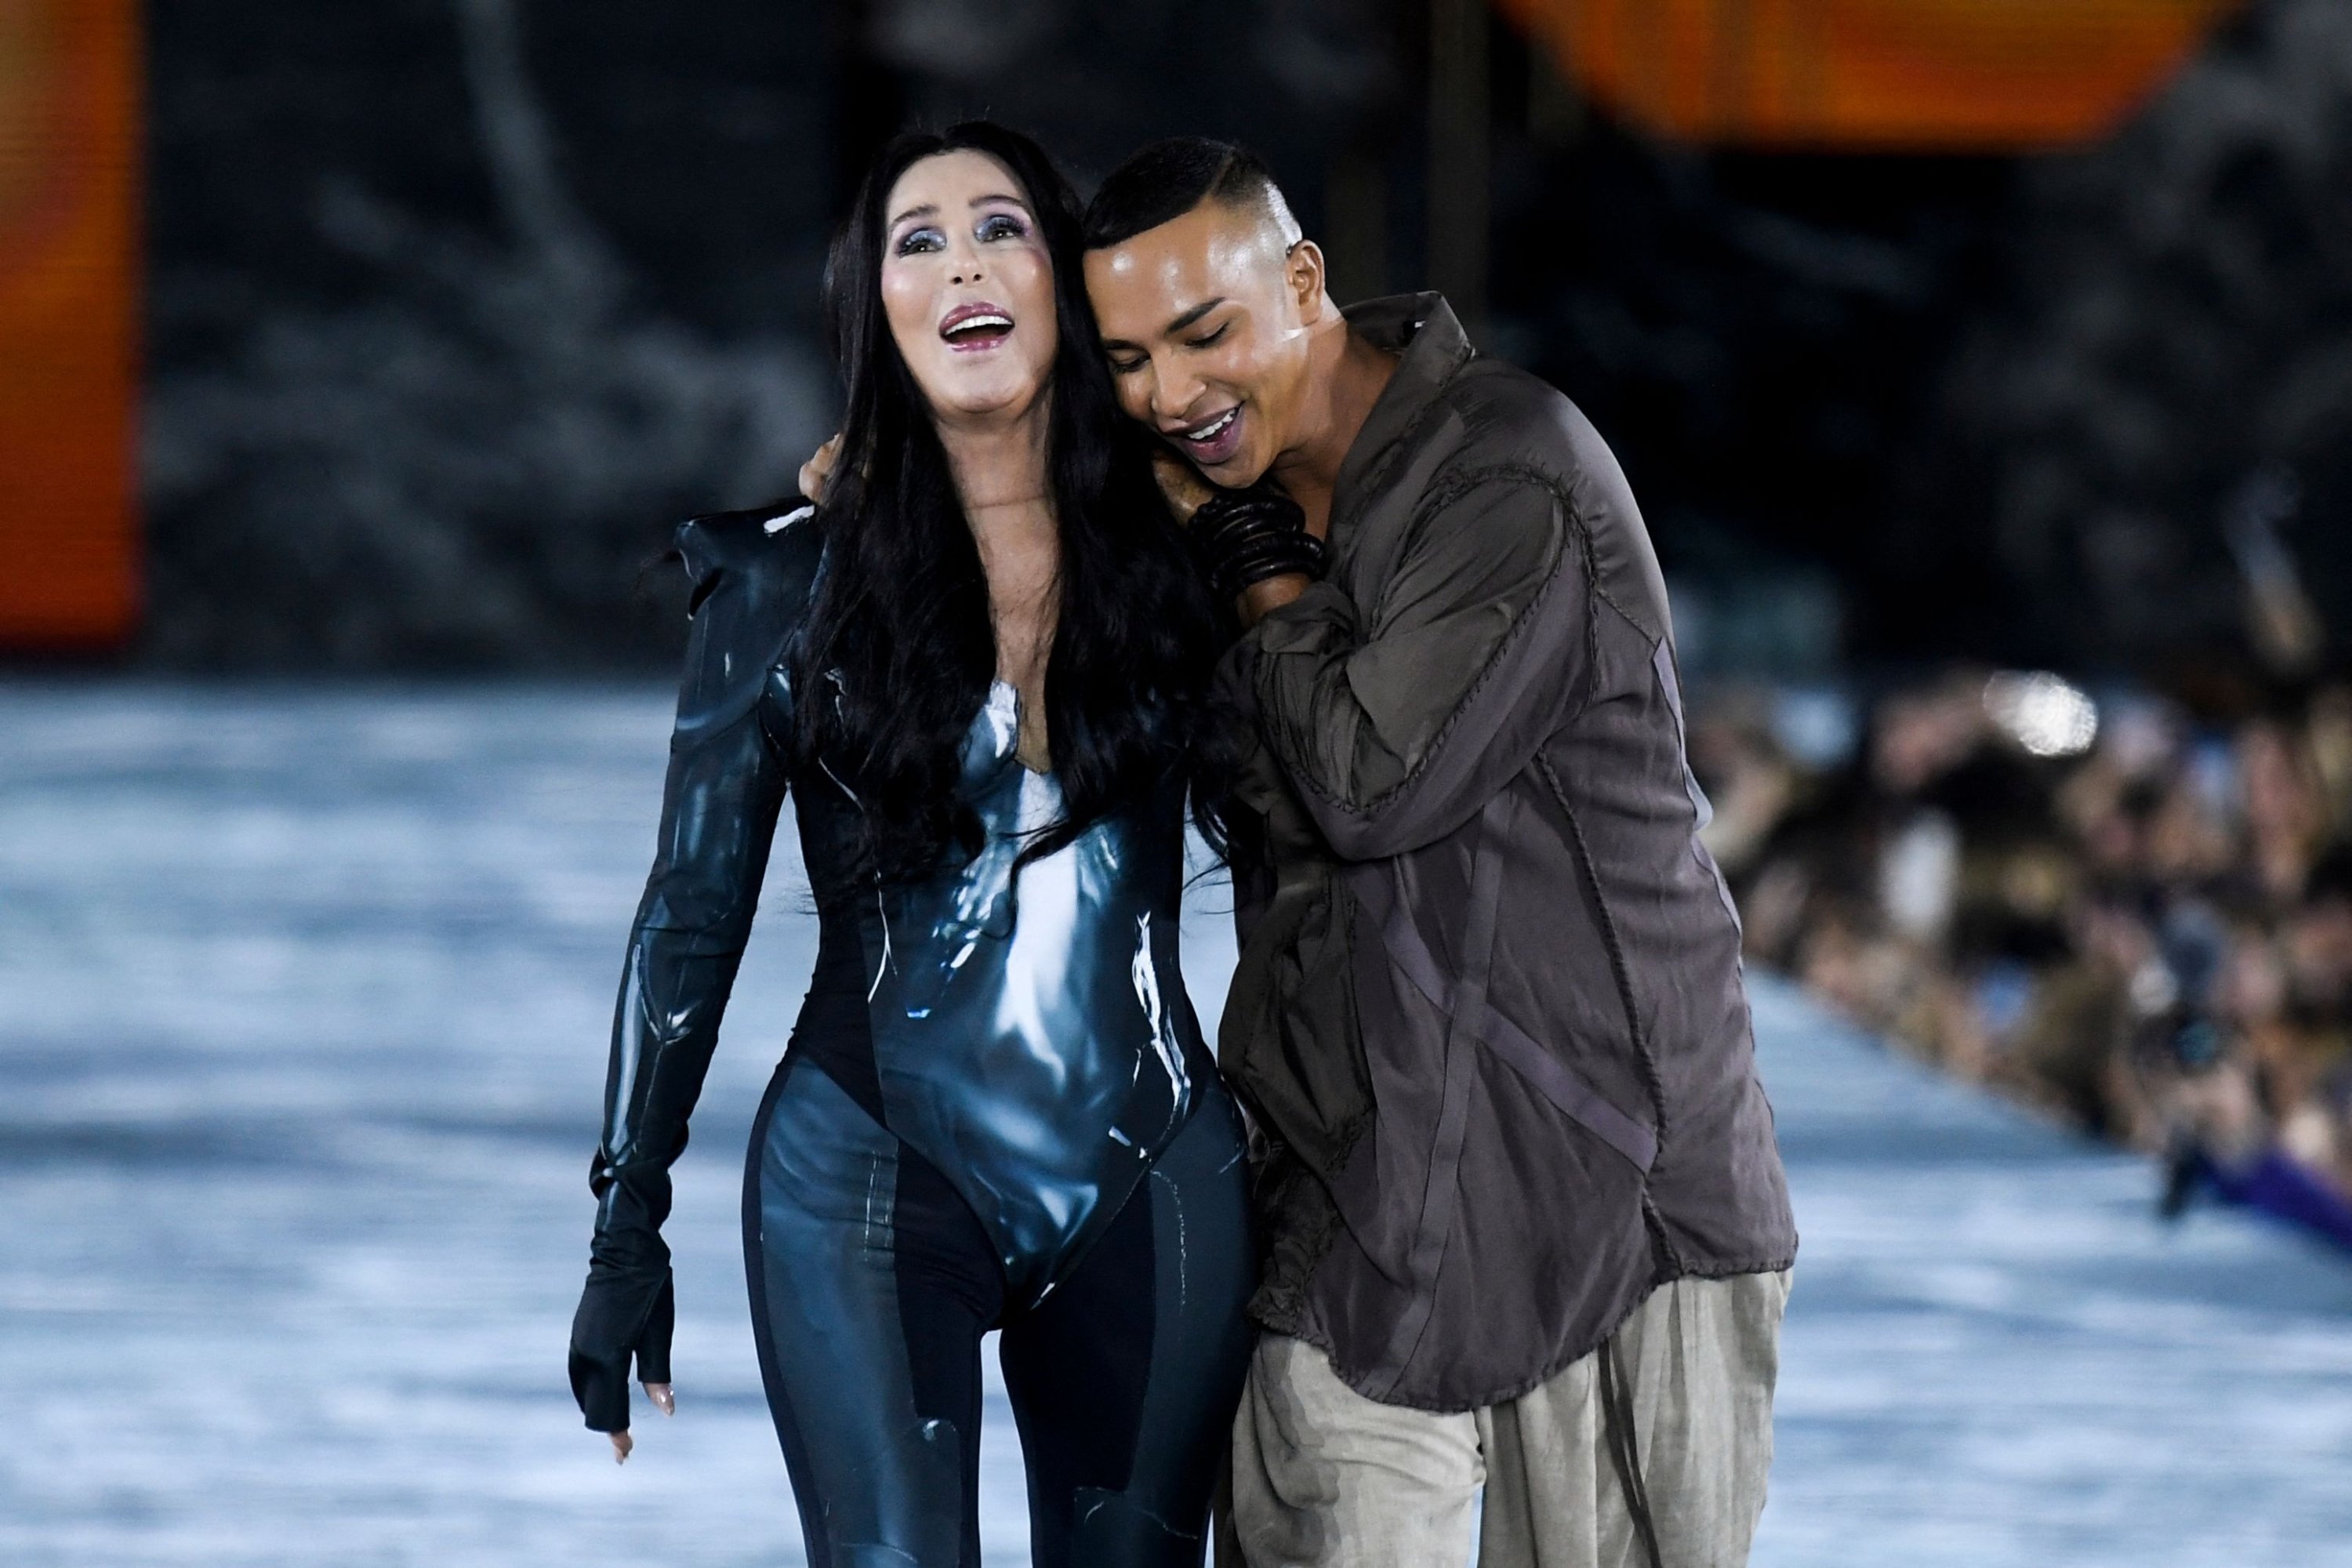 Cher appears at Balmain finale at Paris Fashion Week | Daily Sabah